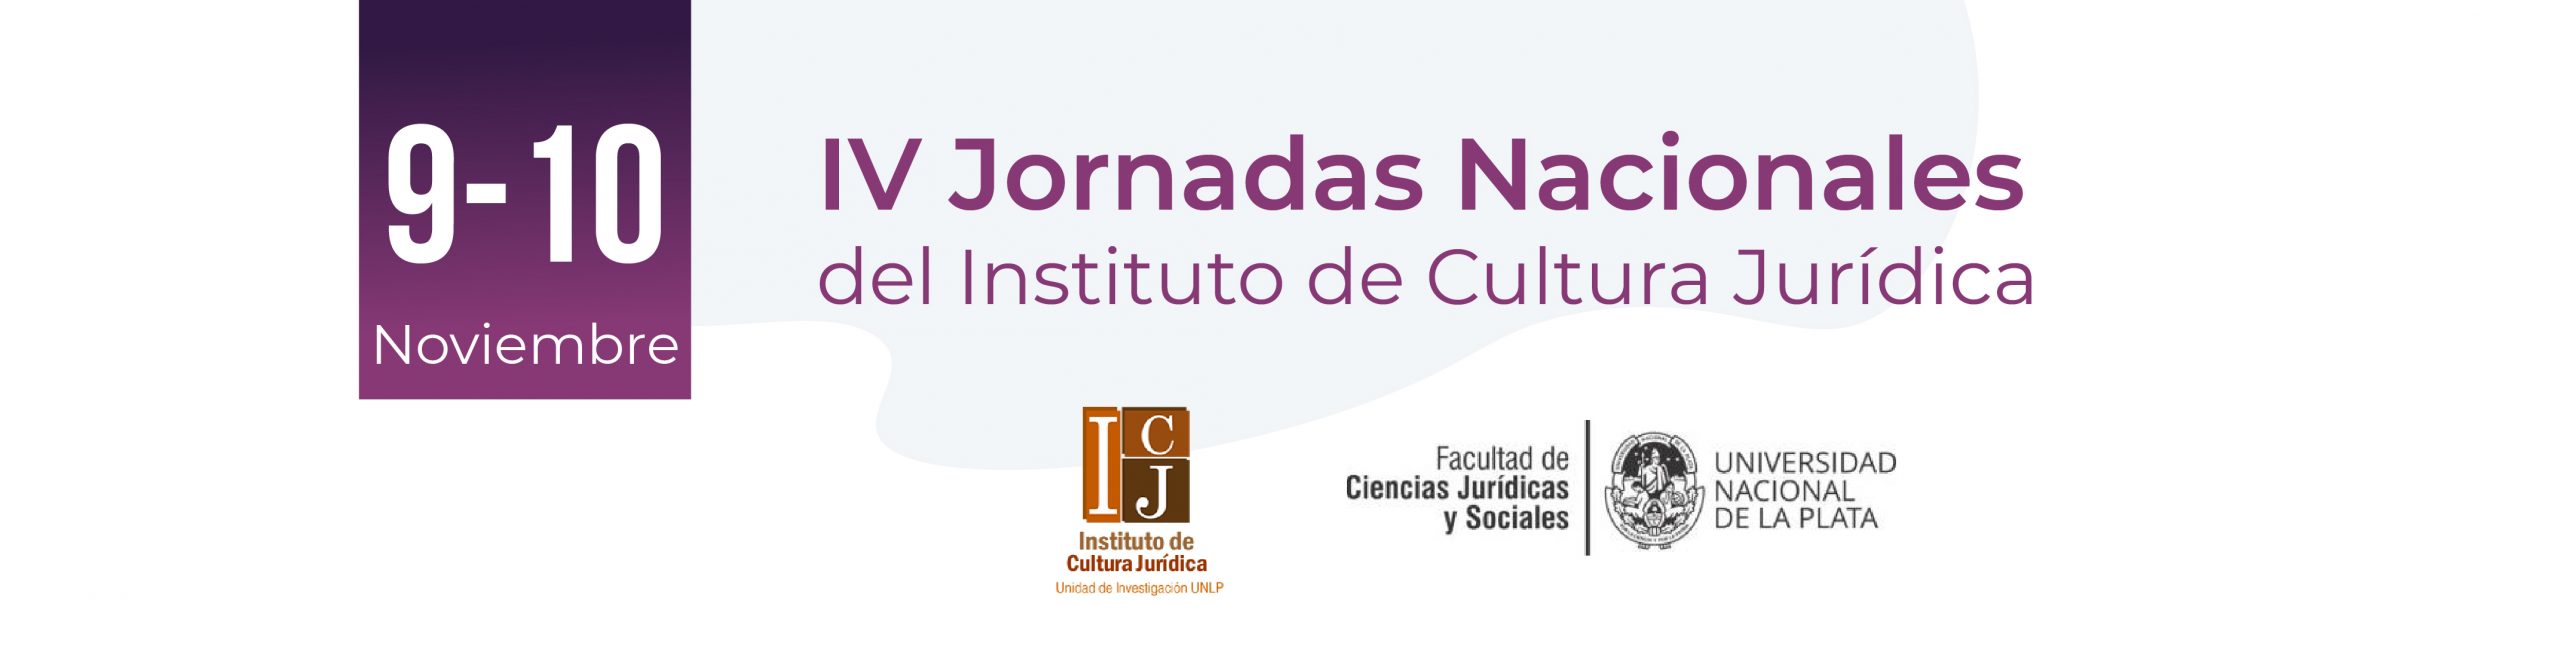 IV Jornadas Nacionales del Instituto de Cultura Jurídica Logo